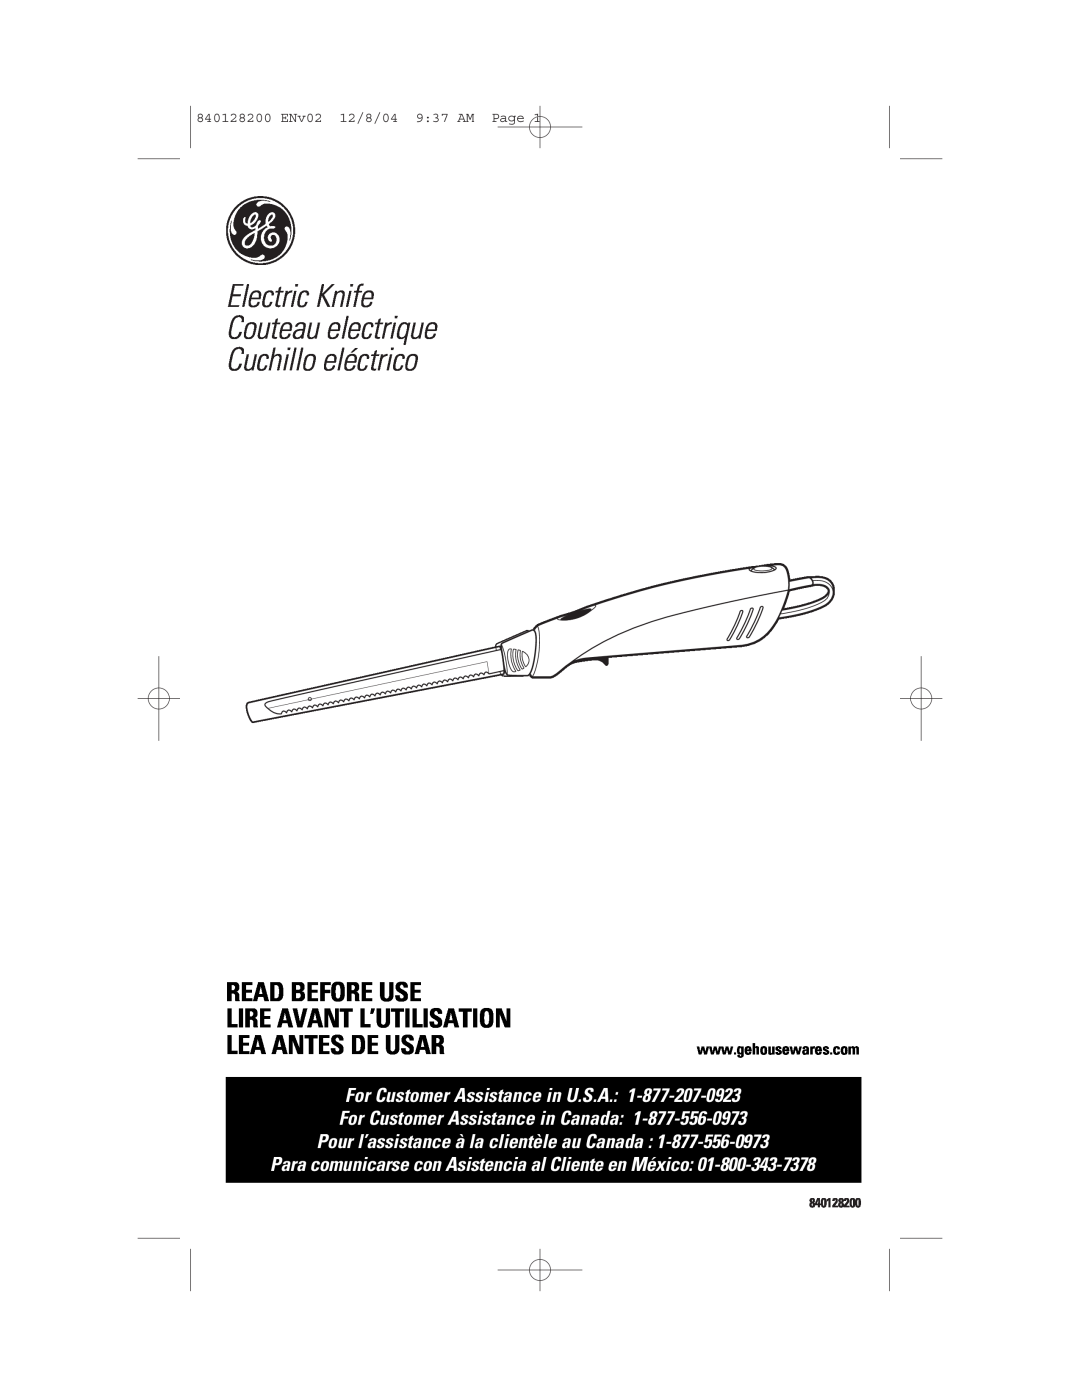 GE 169020 manual Electric Knife Couteau electrique Cuchillo eléctrico, Read Before Use Lire Avant L’Utilisation, 840128200 